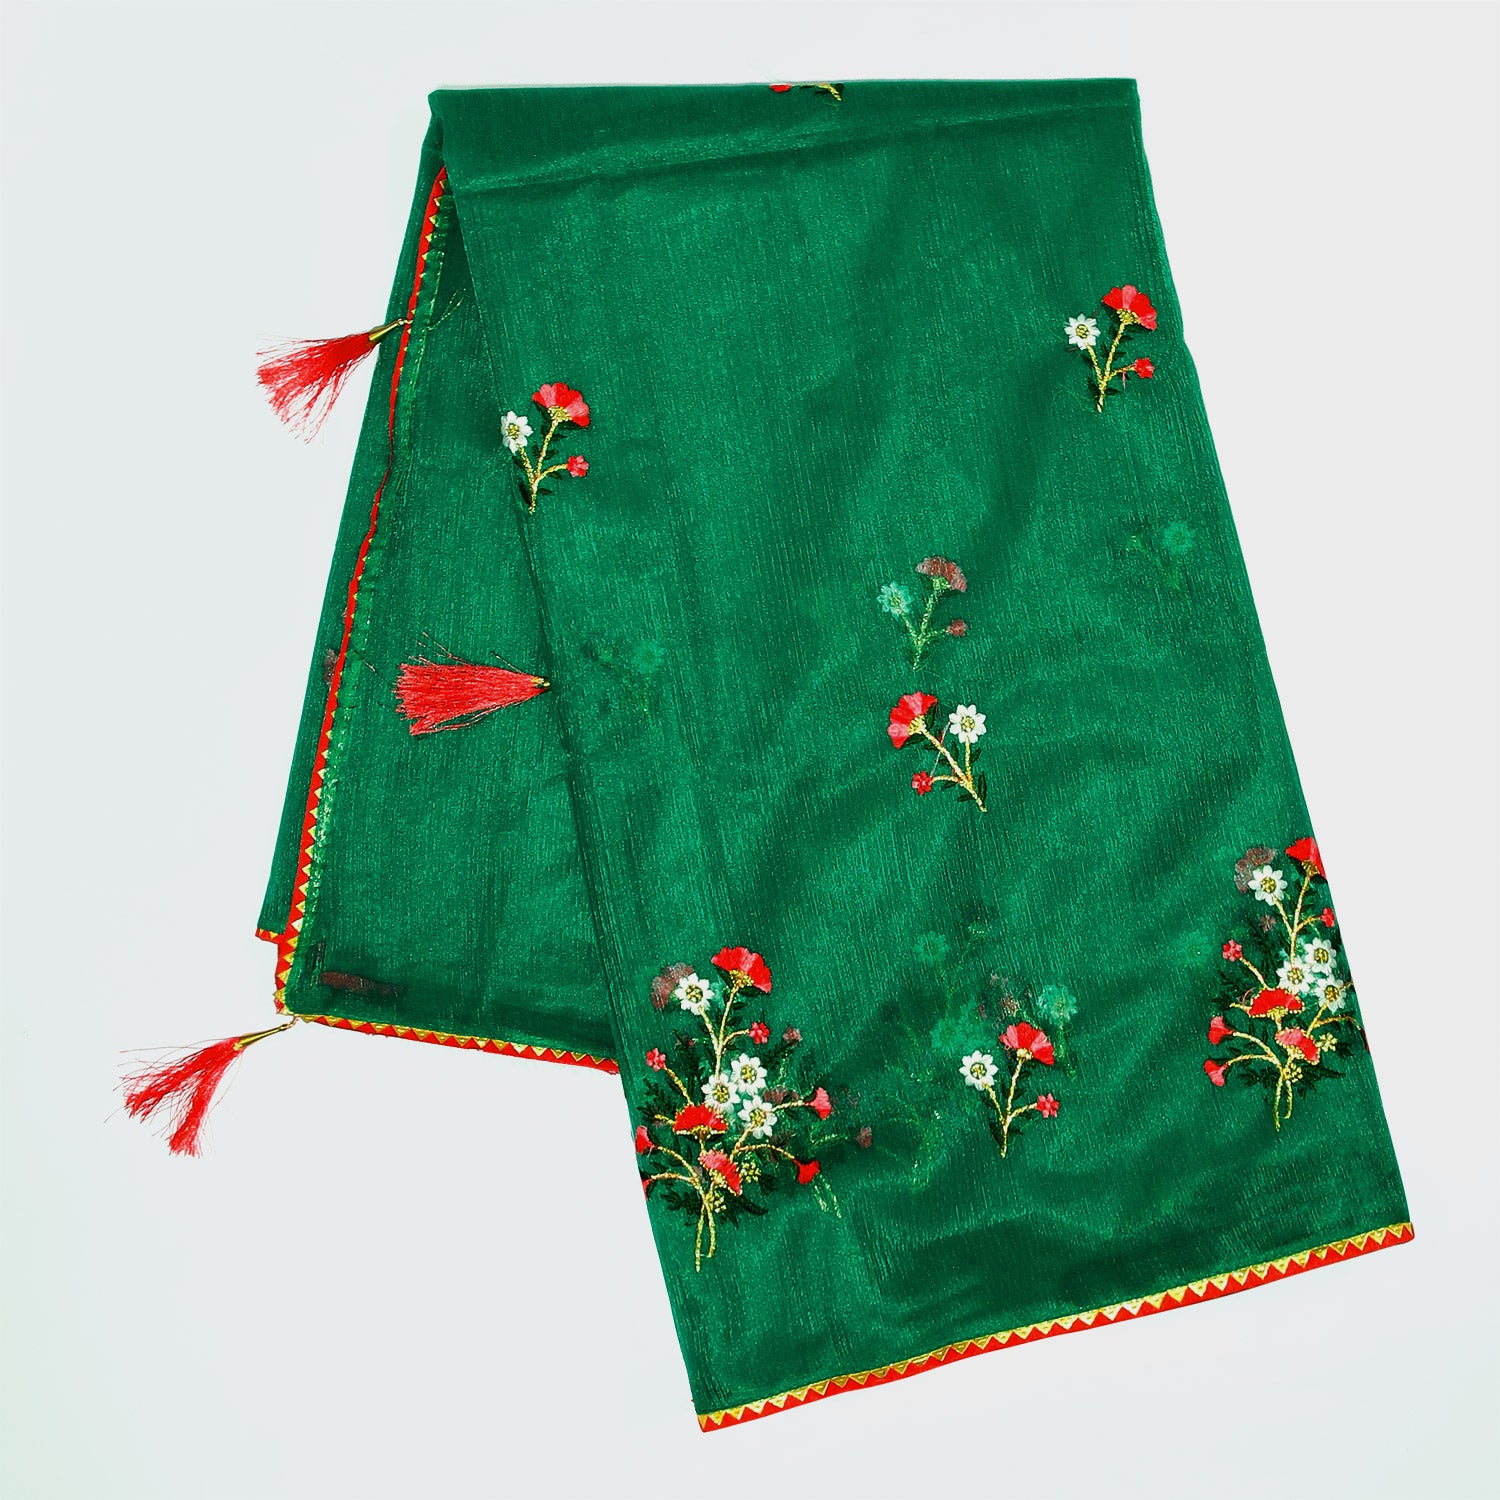 Green Organza Saree, Fancy Designer Saree, Women's Ethnic Wear, Indian Saree, Designer Blouse, Party Wear Saree, Wedding Saree, Festival Saree, Bloomaya.com, Online Saree Shopping